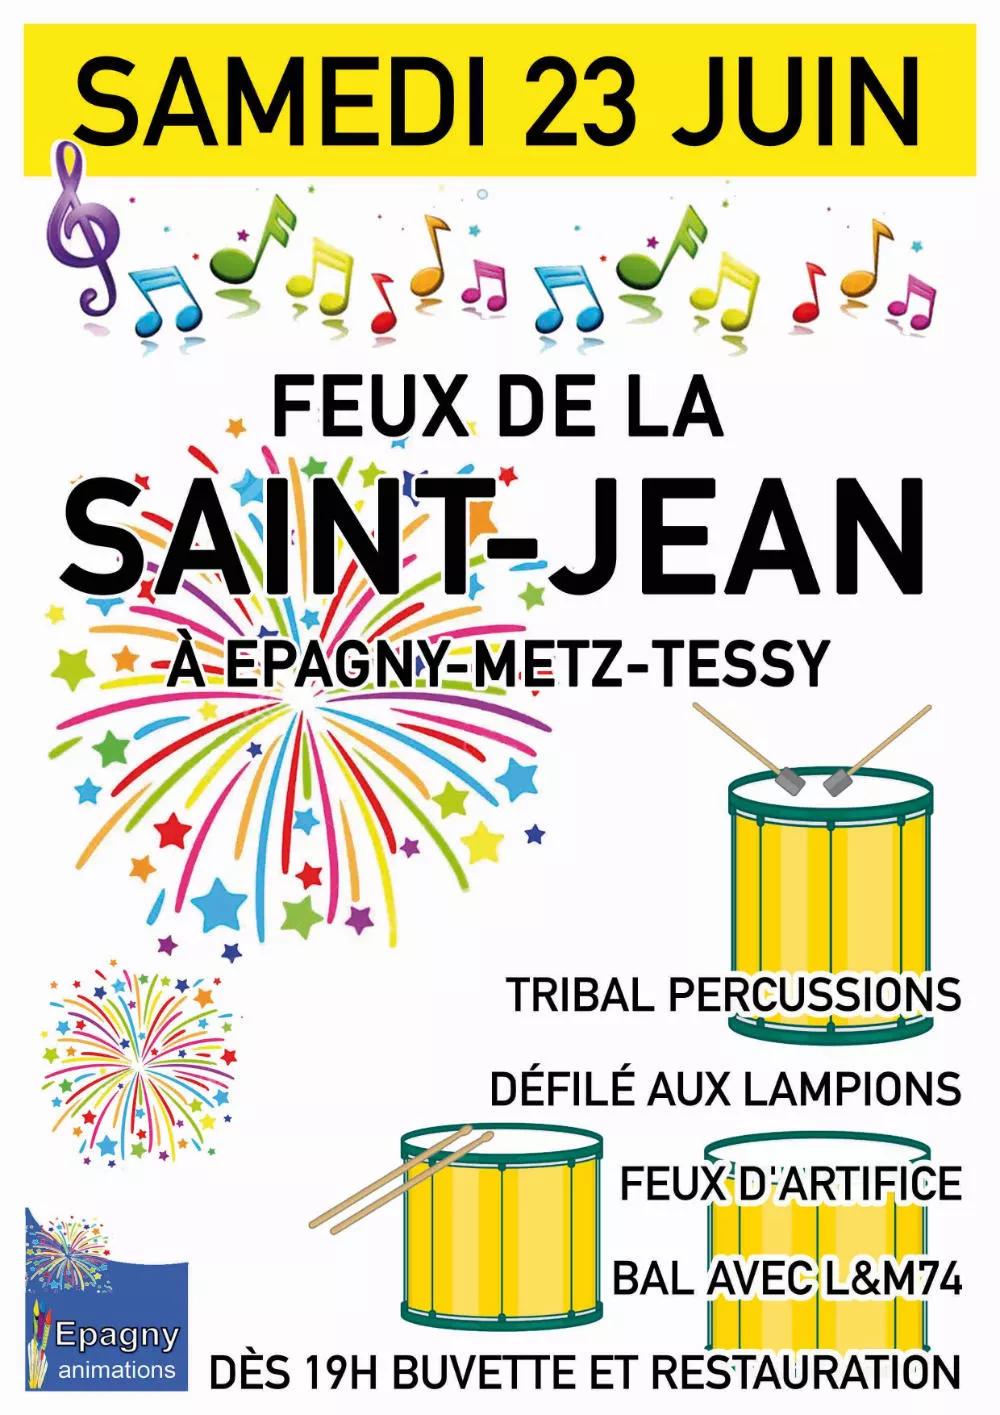 Feux de la St Jean à Epagny Metz-Tessy